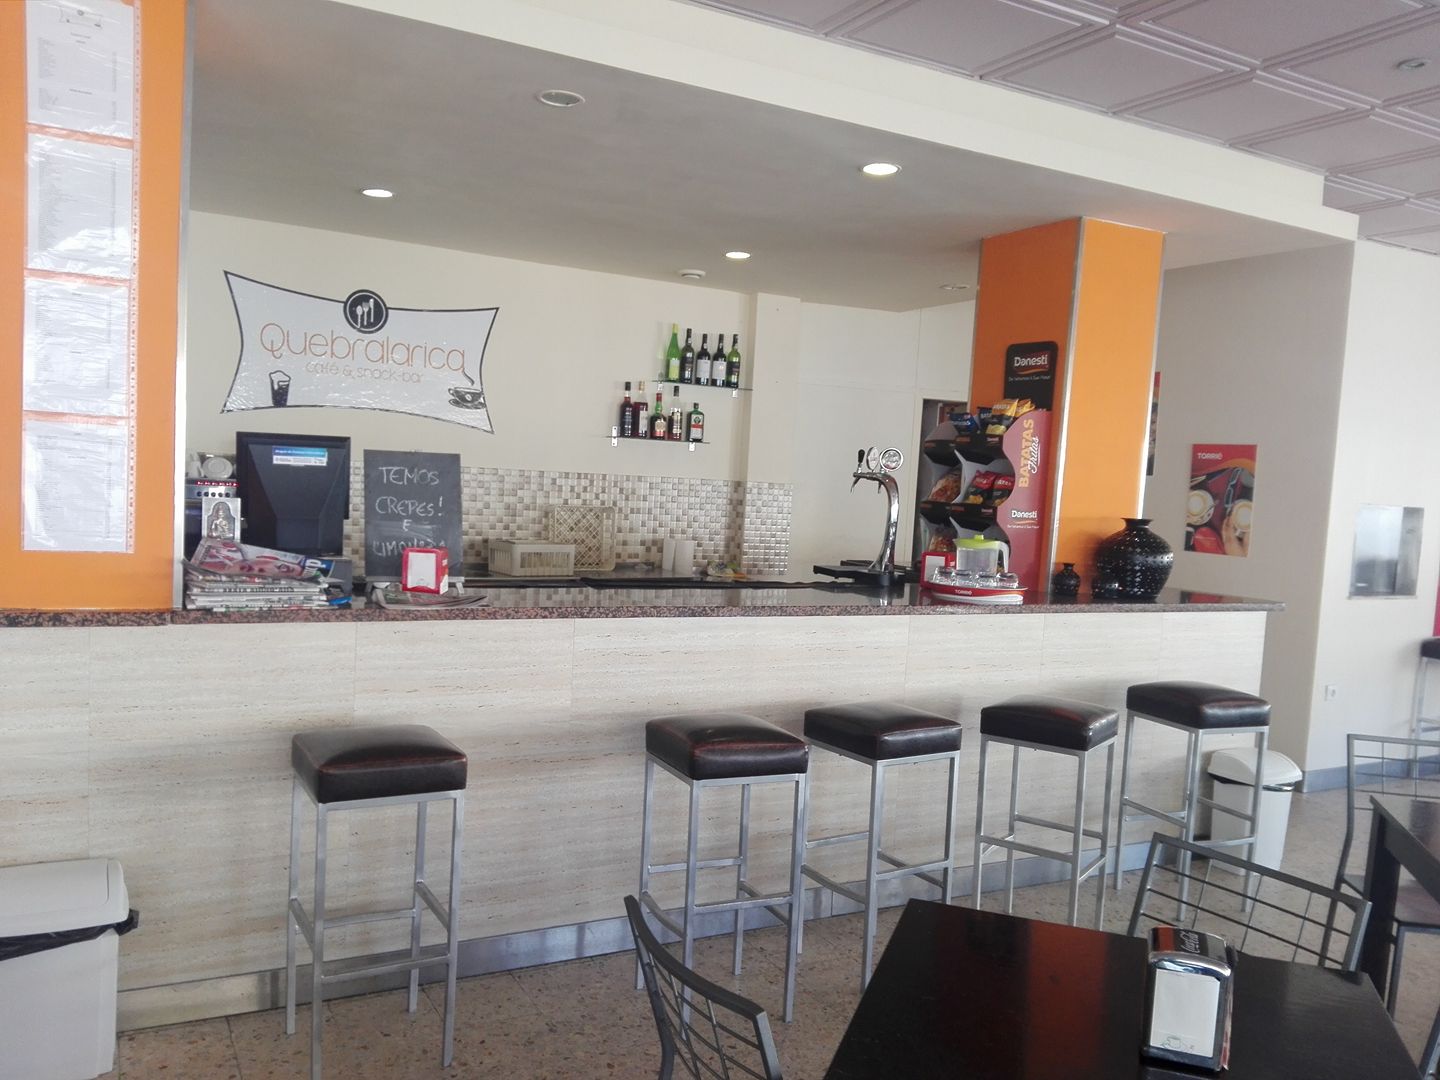 Quebralarica Café & Snack Bar